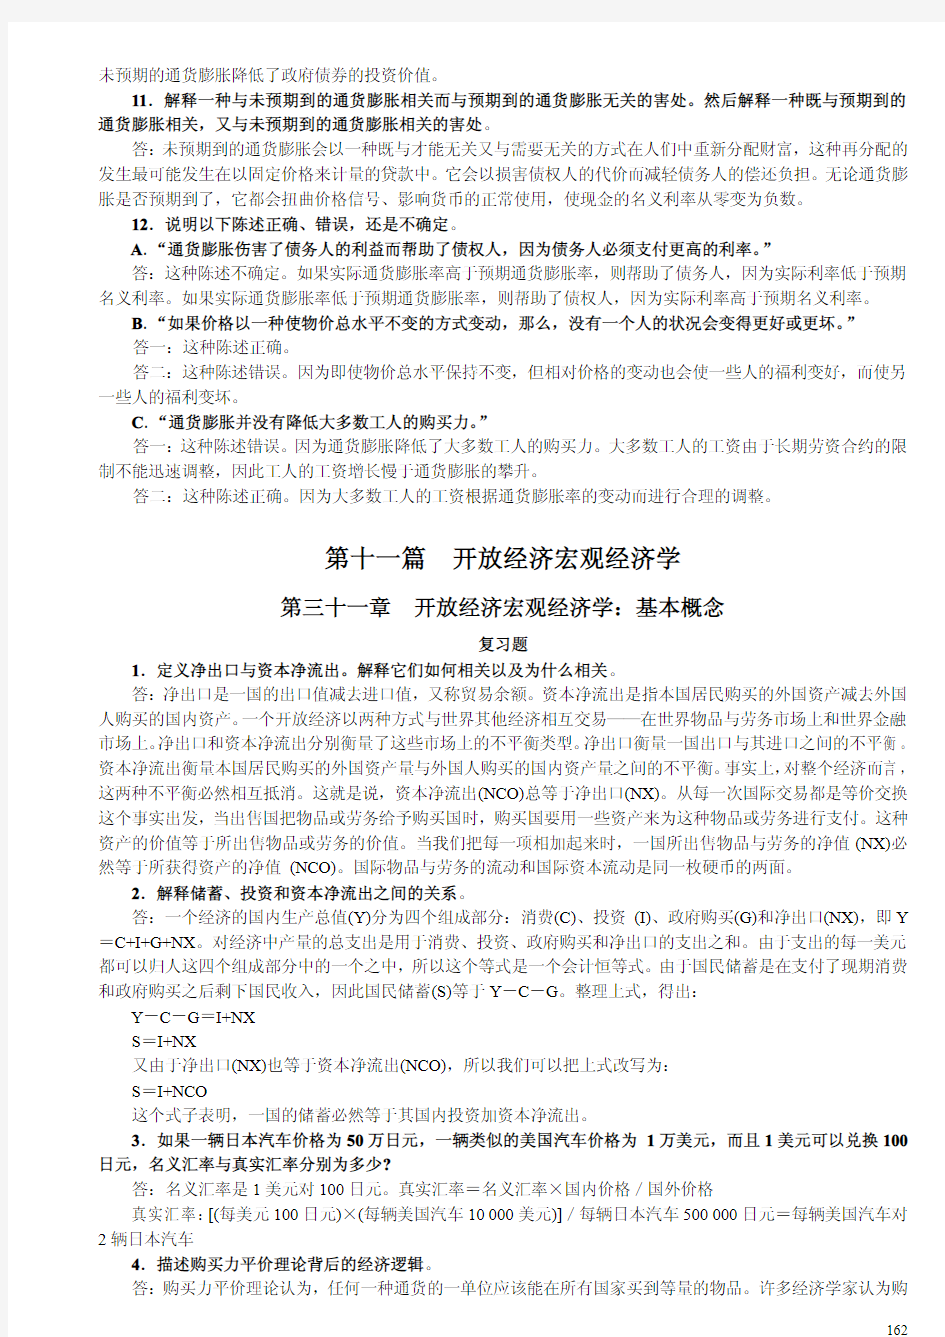 曼昆宏观经济学原理第五版chap31to32课后习题答案(中文)